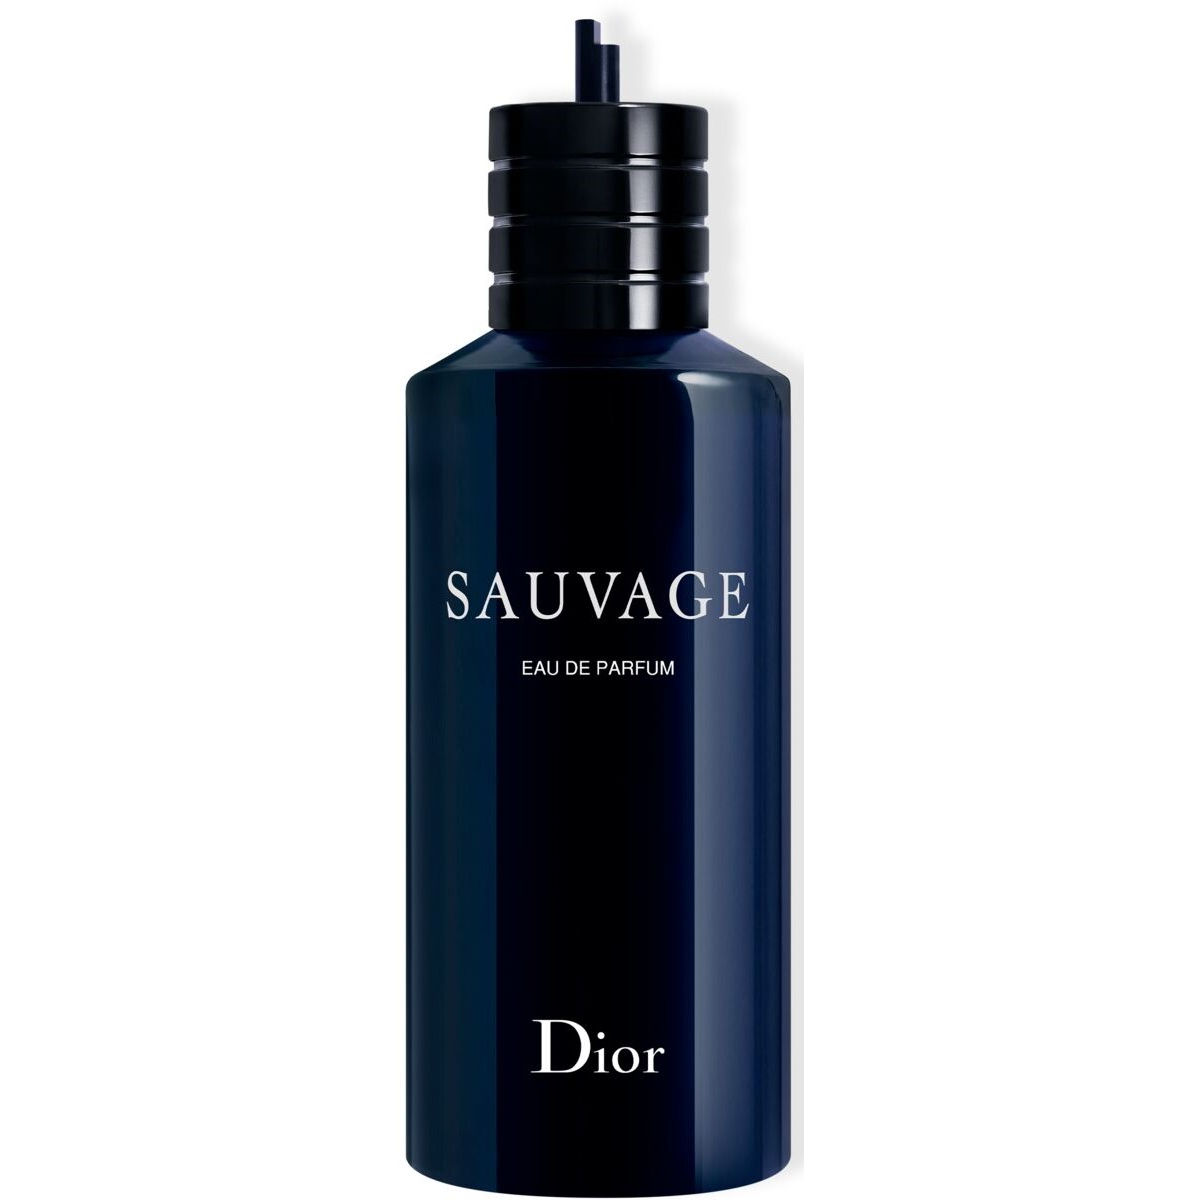 DIOR Sauvage Eau de Parfum Refill Eau de parfum navulling 300 ml